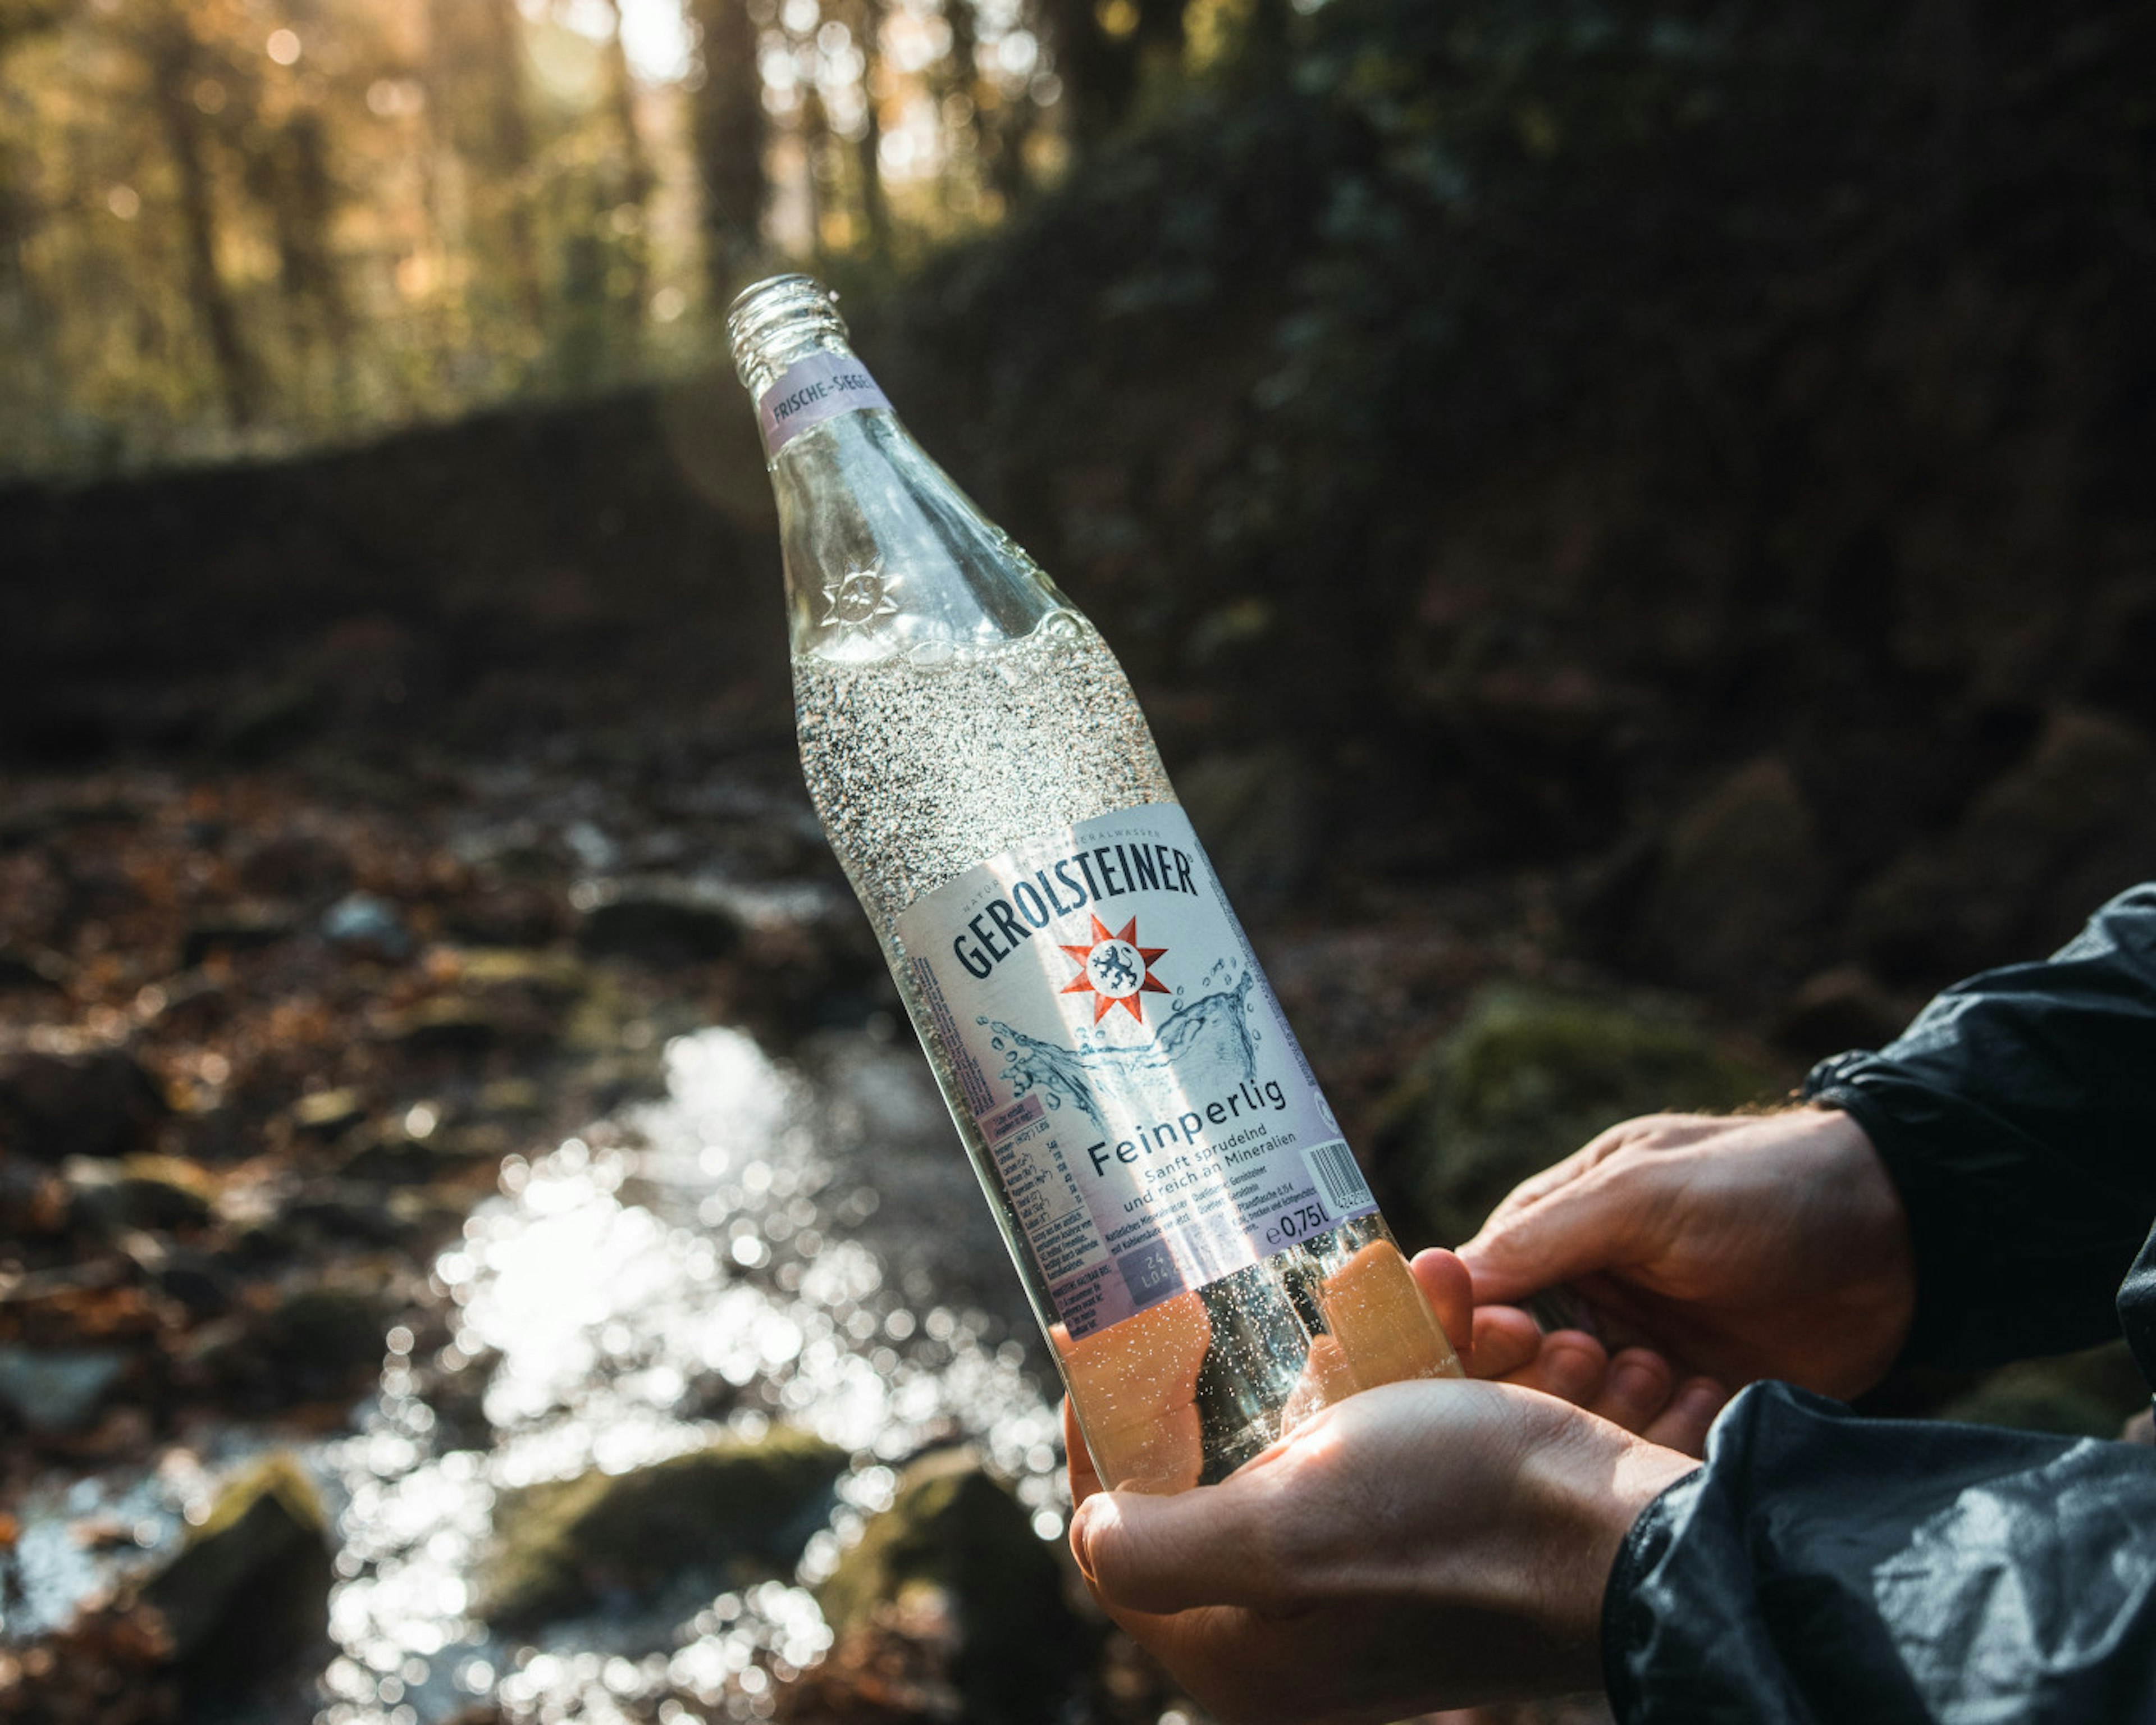 Eine Person hält eine Gerolsteiner Glasflasche der Sorte Feinperlig ins Bild. Die Location ist im Wald an einem Bach